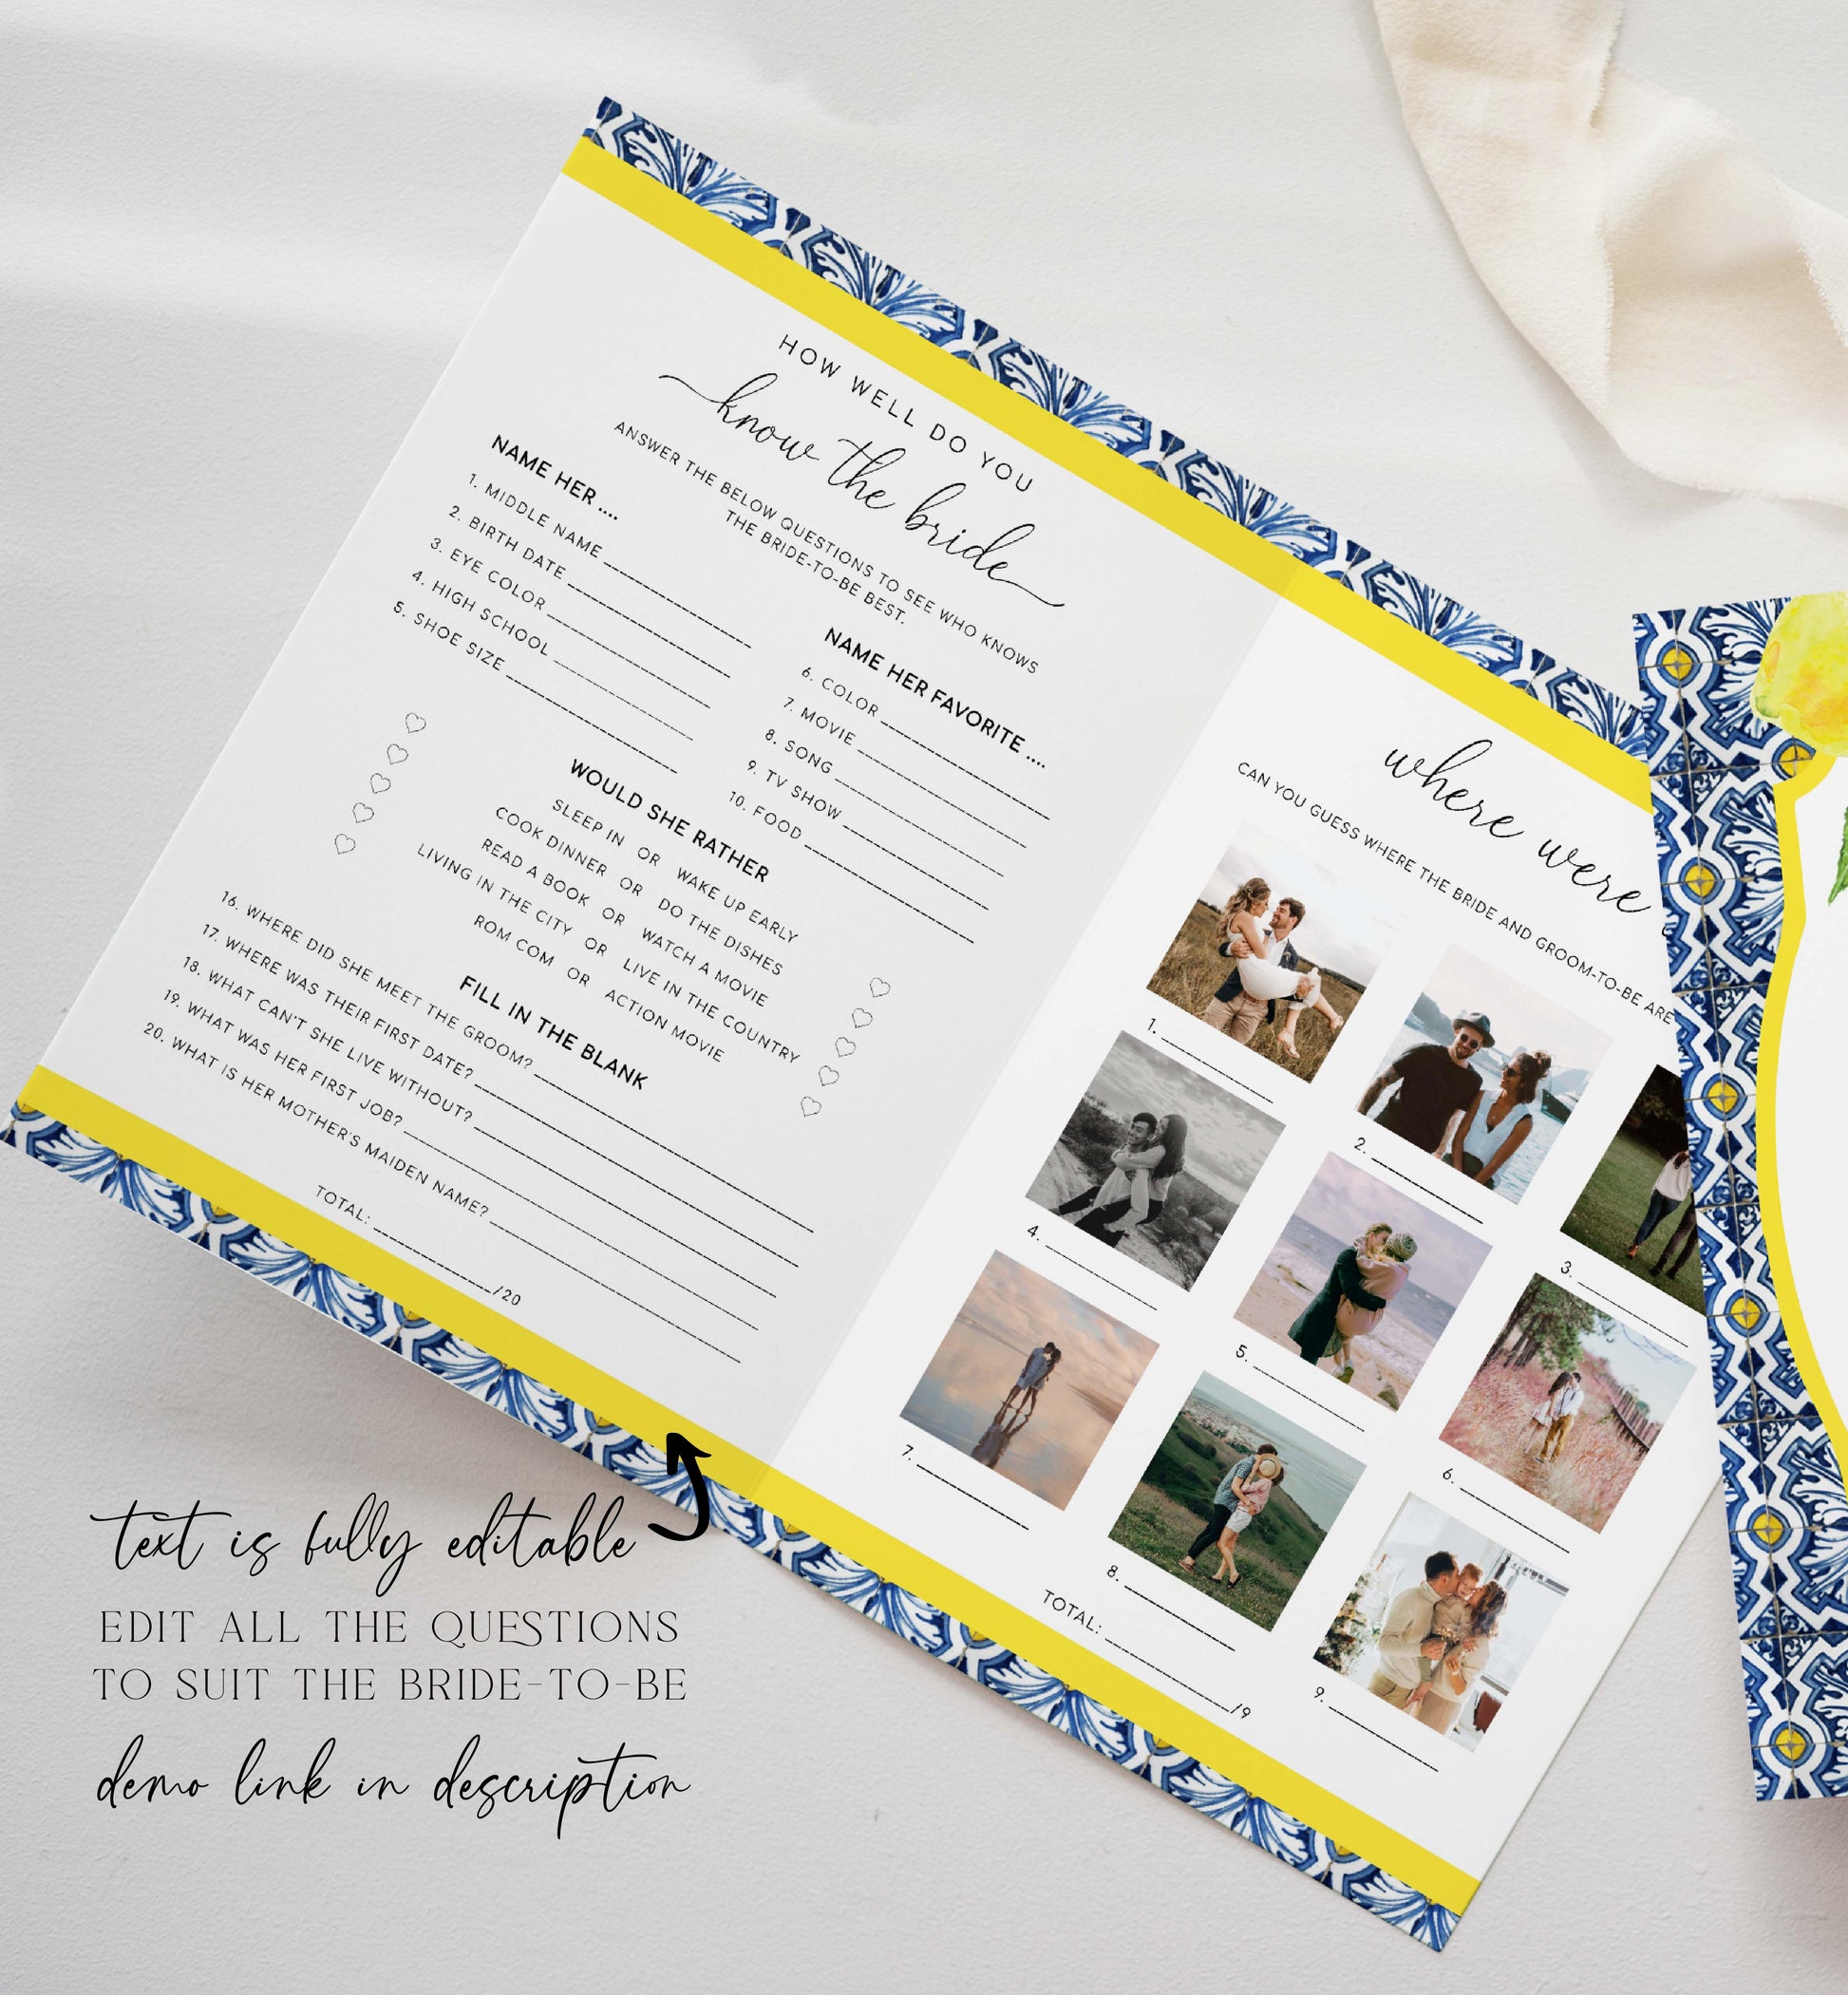 Bridal Shower Menu and Games Booklet, Positano Blue Tile Bridal Shower, Lemons, Printable Menu, Bridal Shower Games, Hens Party Games